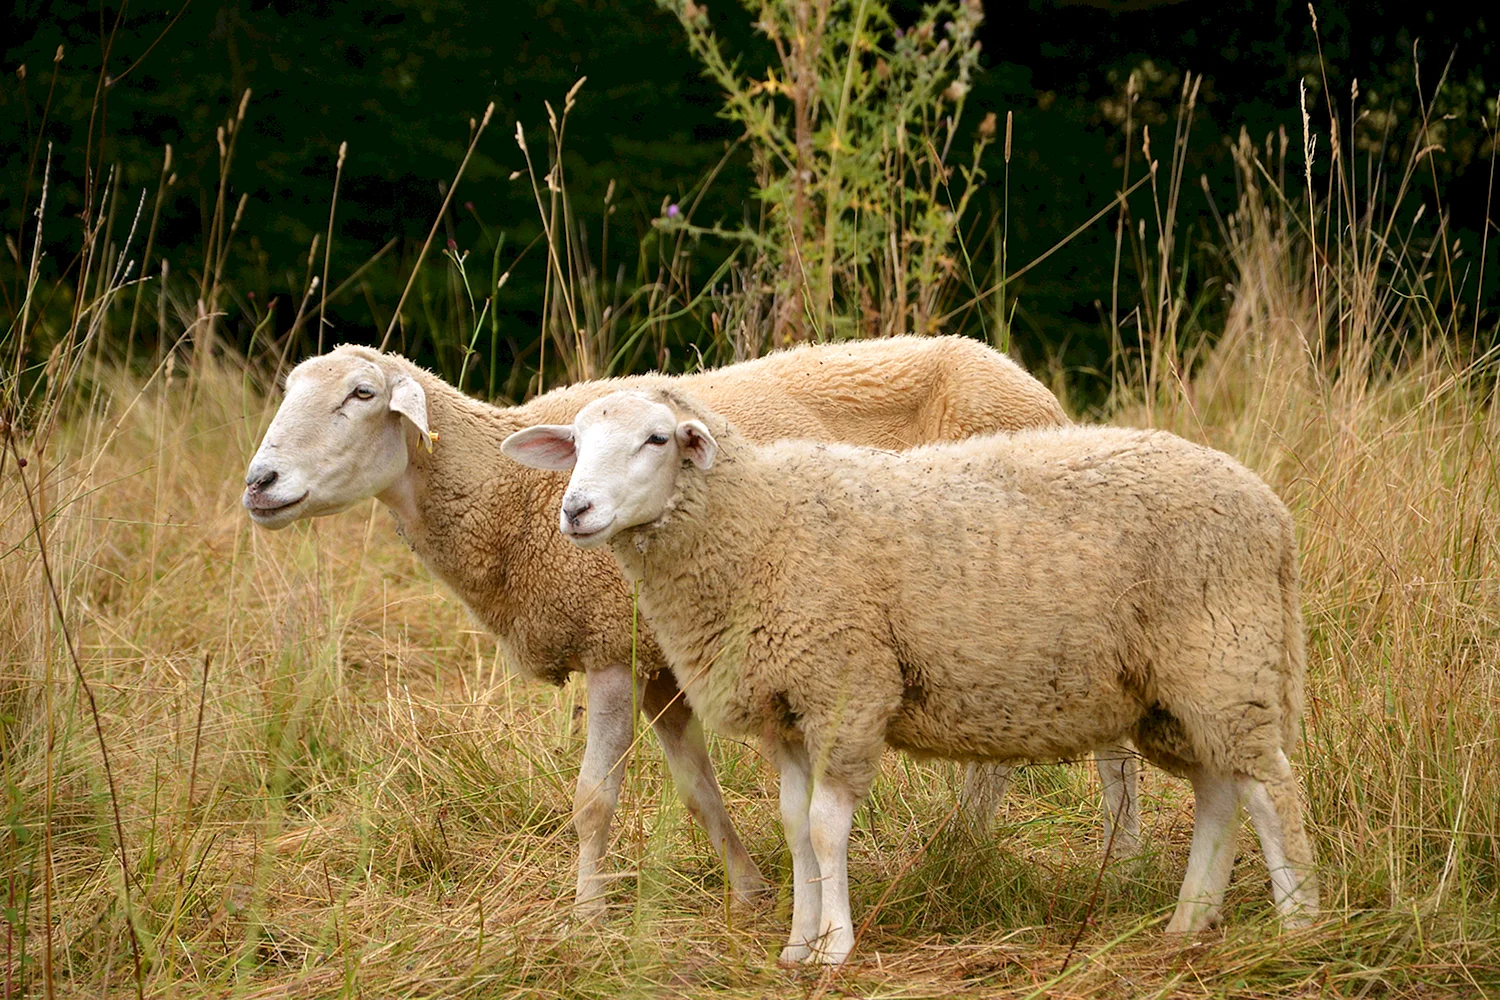 Остфризская порода овец